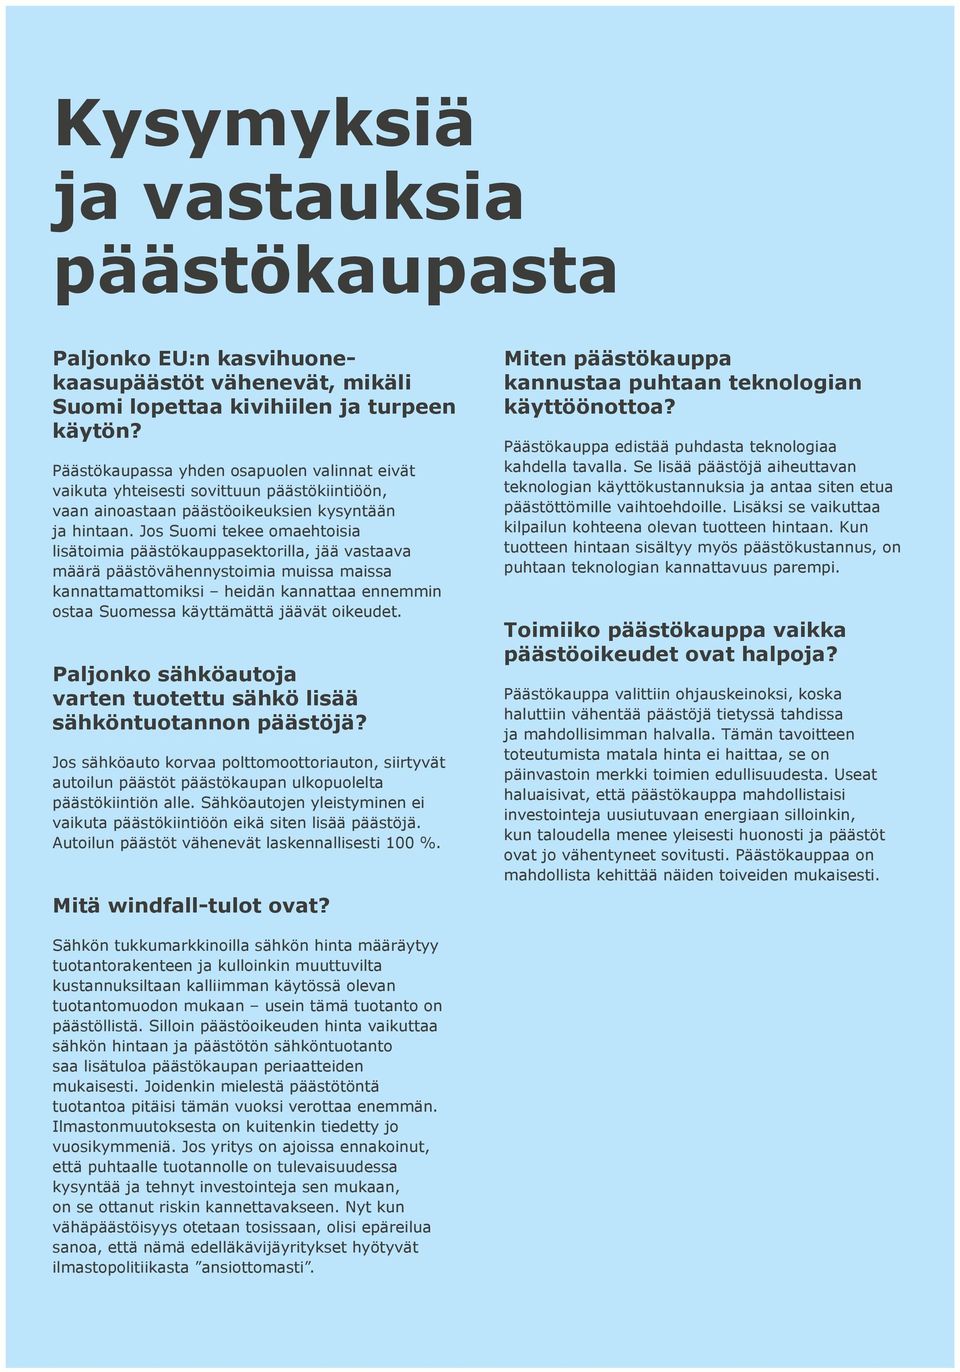 Jos Suomi tekee omaehtoisia lisätoimia päästökauppasektorilla, jää vastaava määrä päästövähennystoimia muissa maissa kannattamattomiksi heidän kannattaa ennemmin ostaa Suomessa käyttämättä jäävät